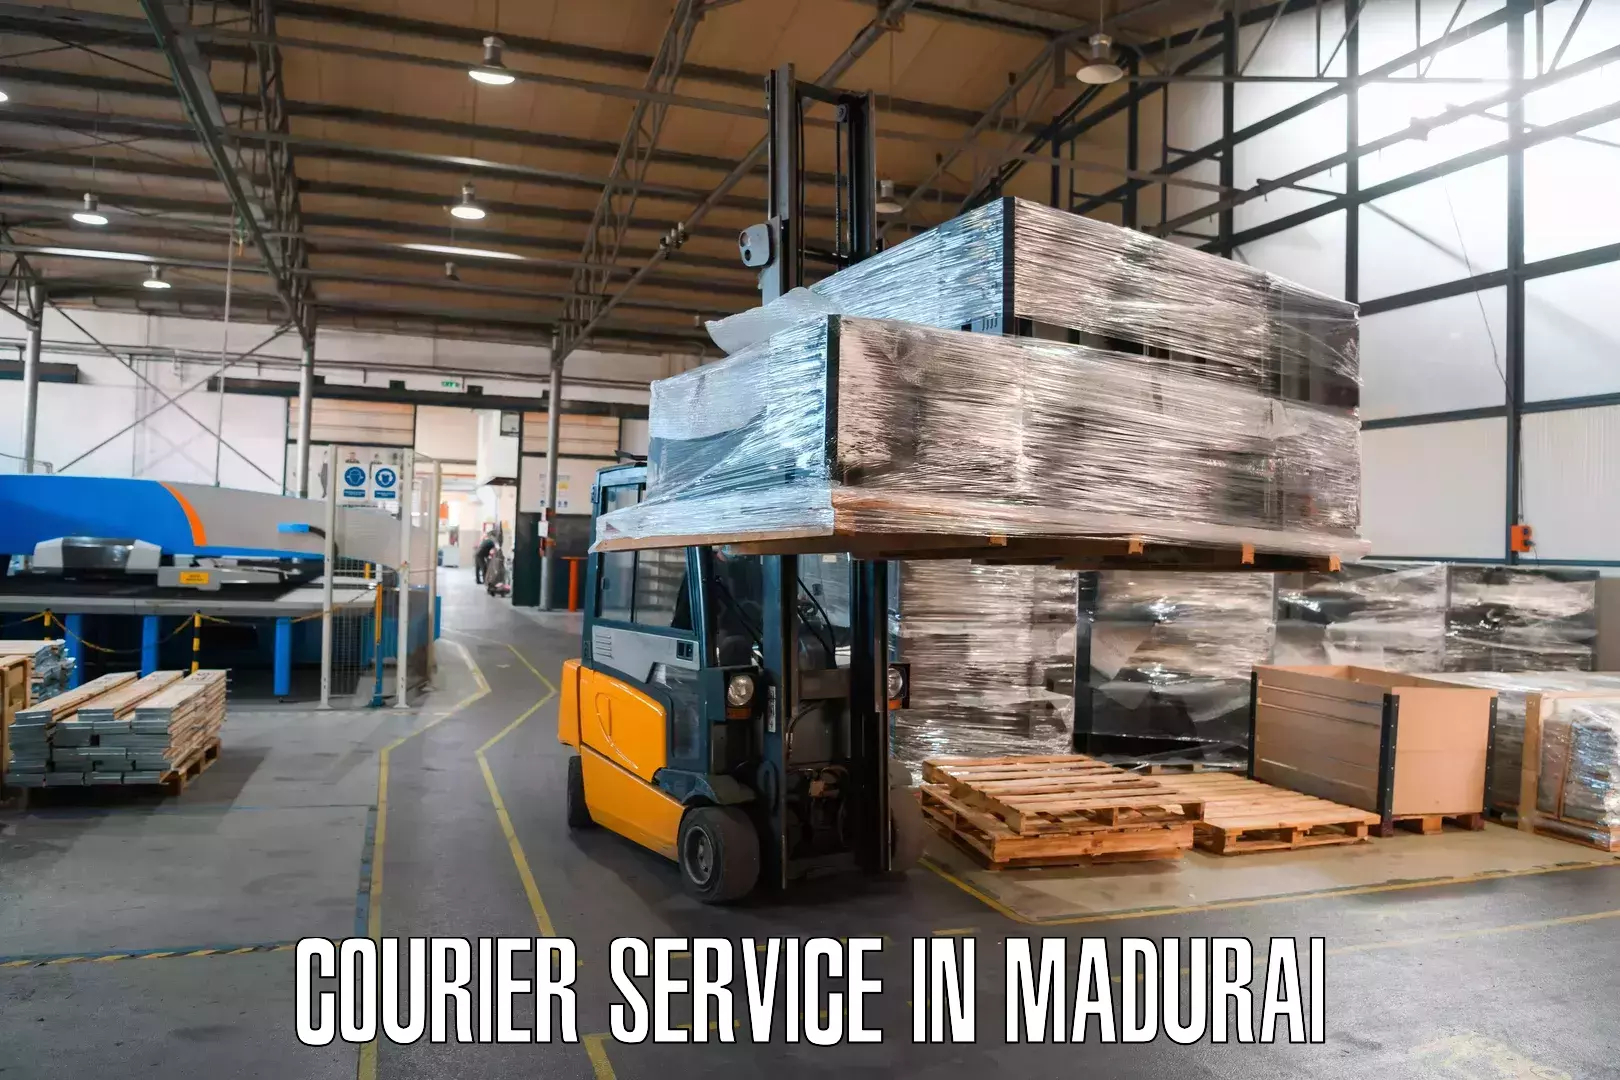 Local delivery service in Madurai